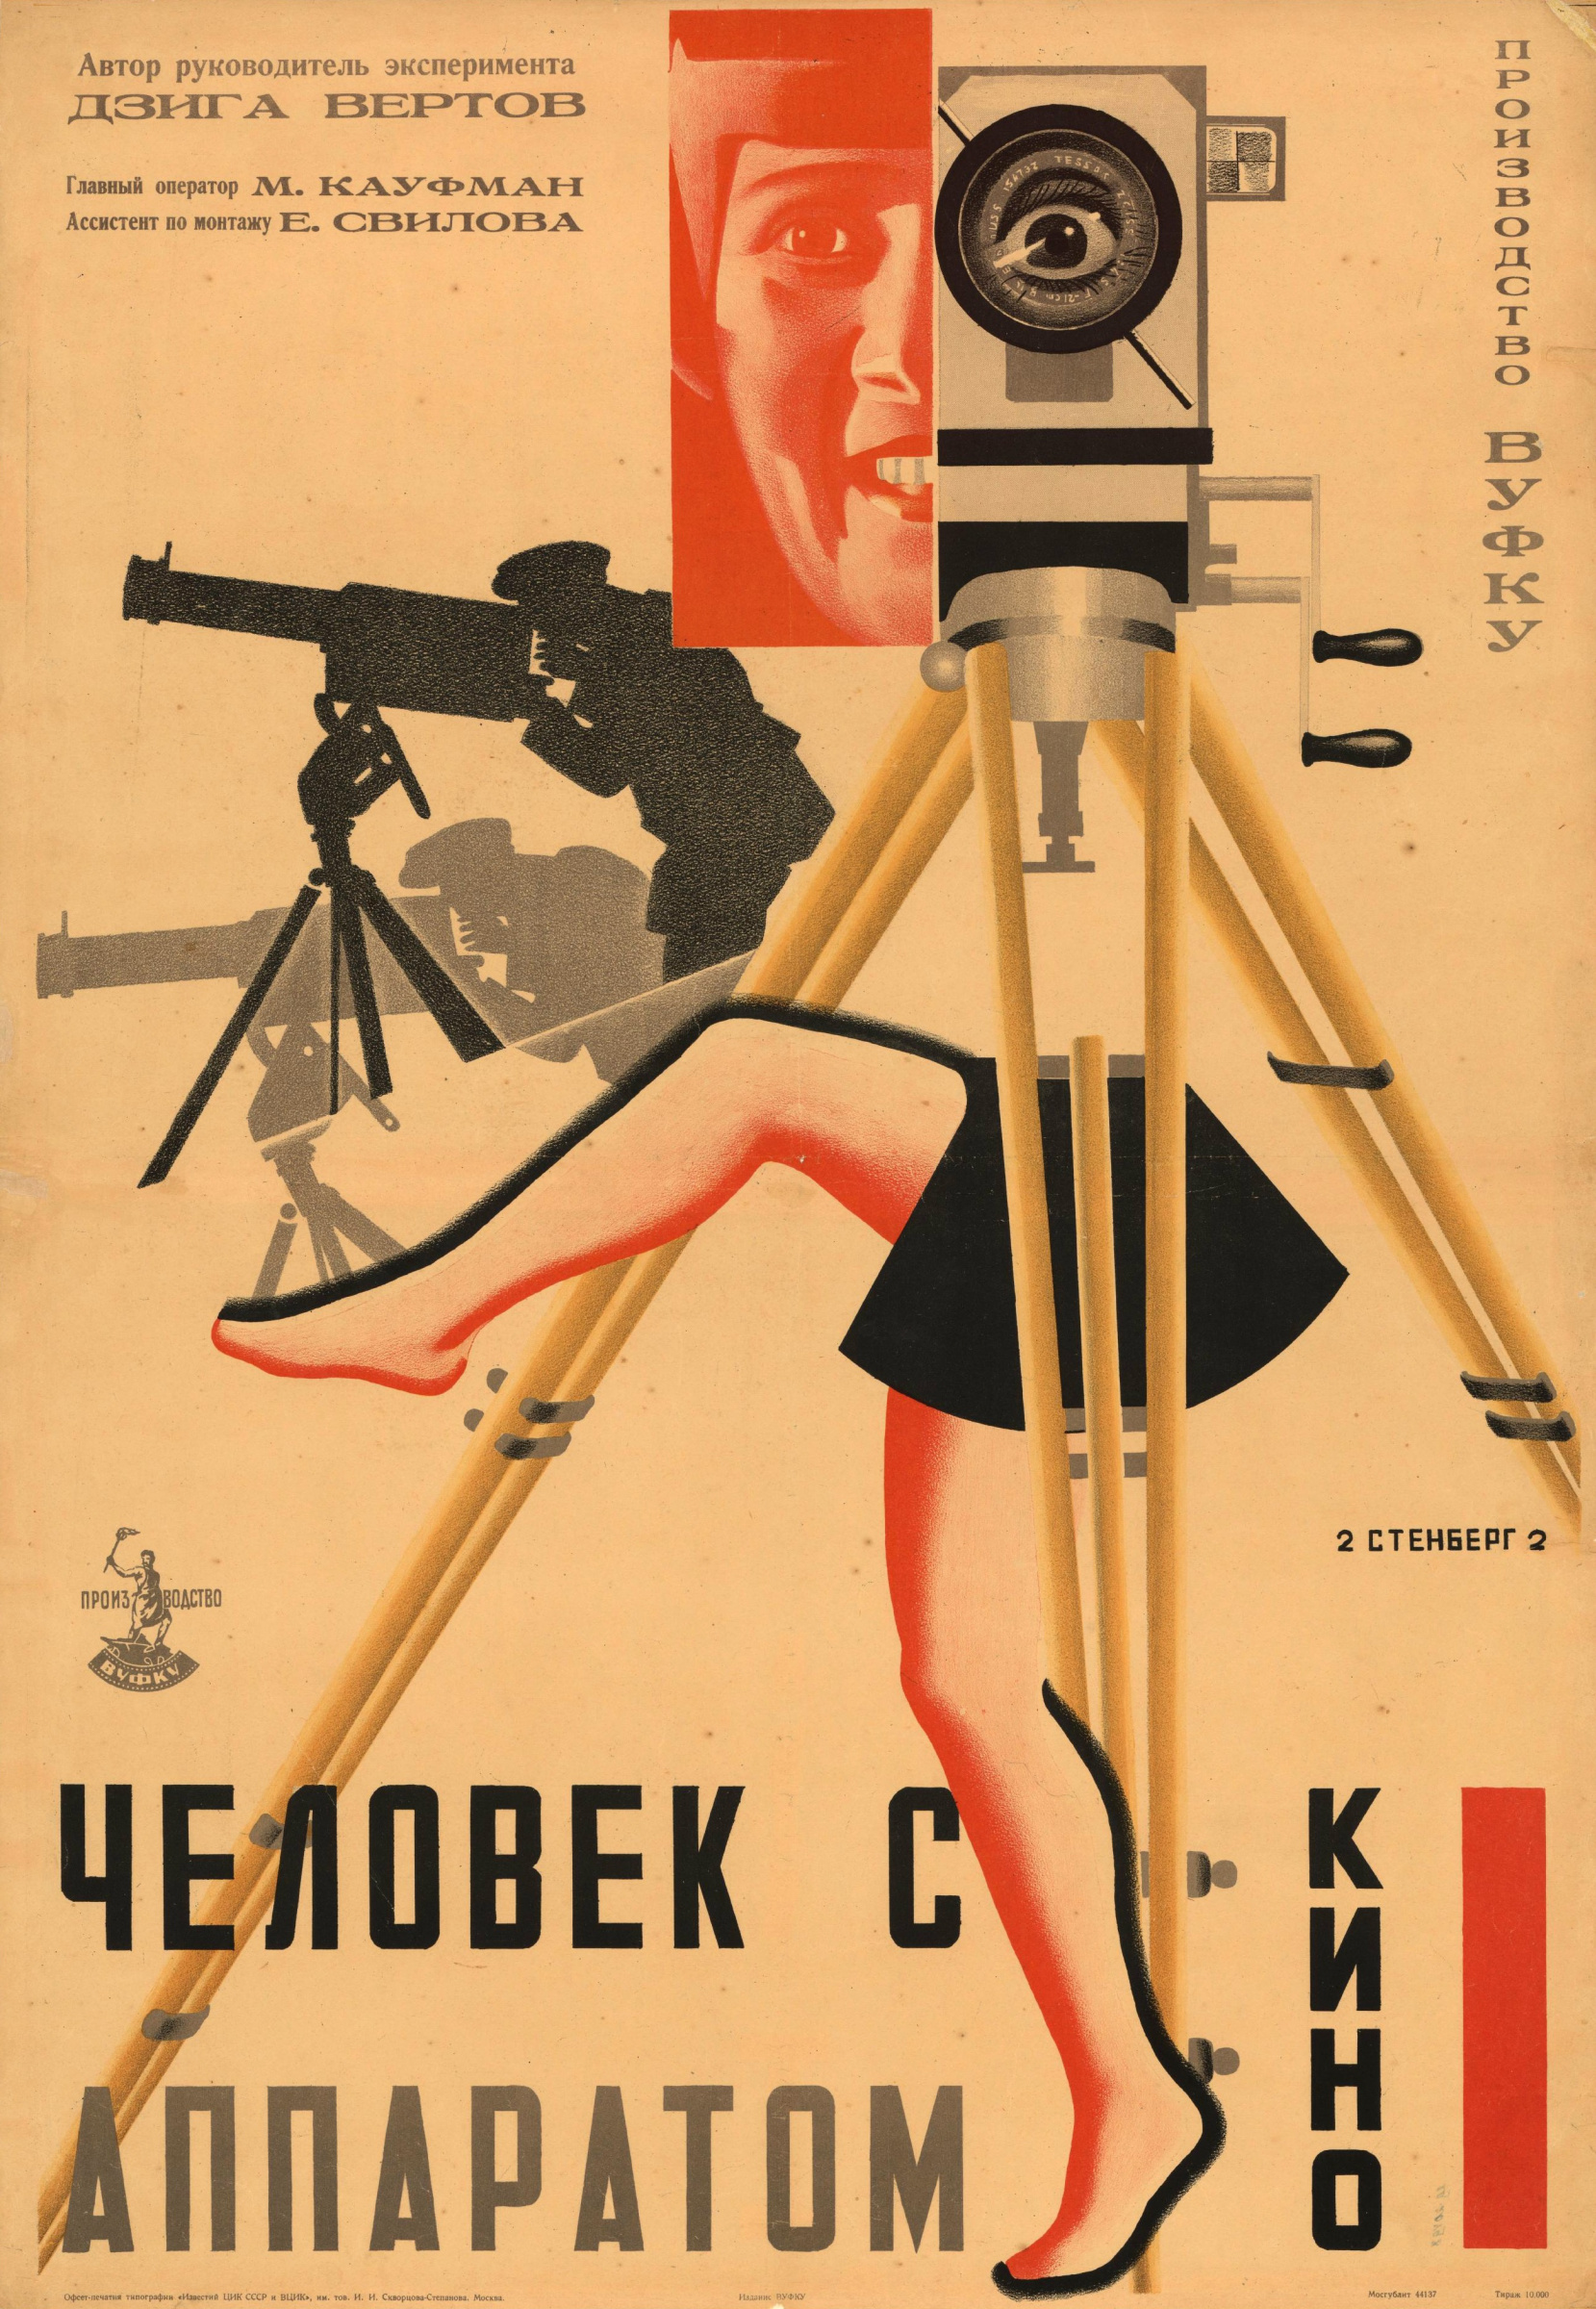 Показ фильма Дзиги Вертова «Человек с киноаппаратом» (1929 г.) с обсуждением